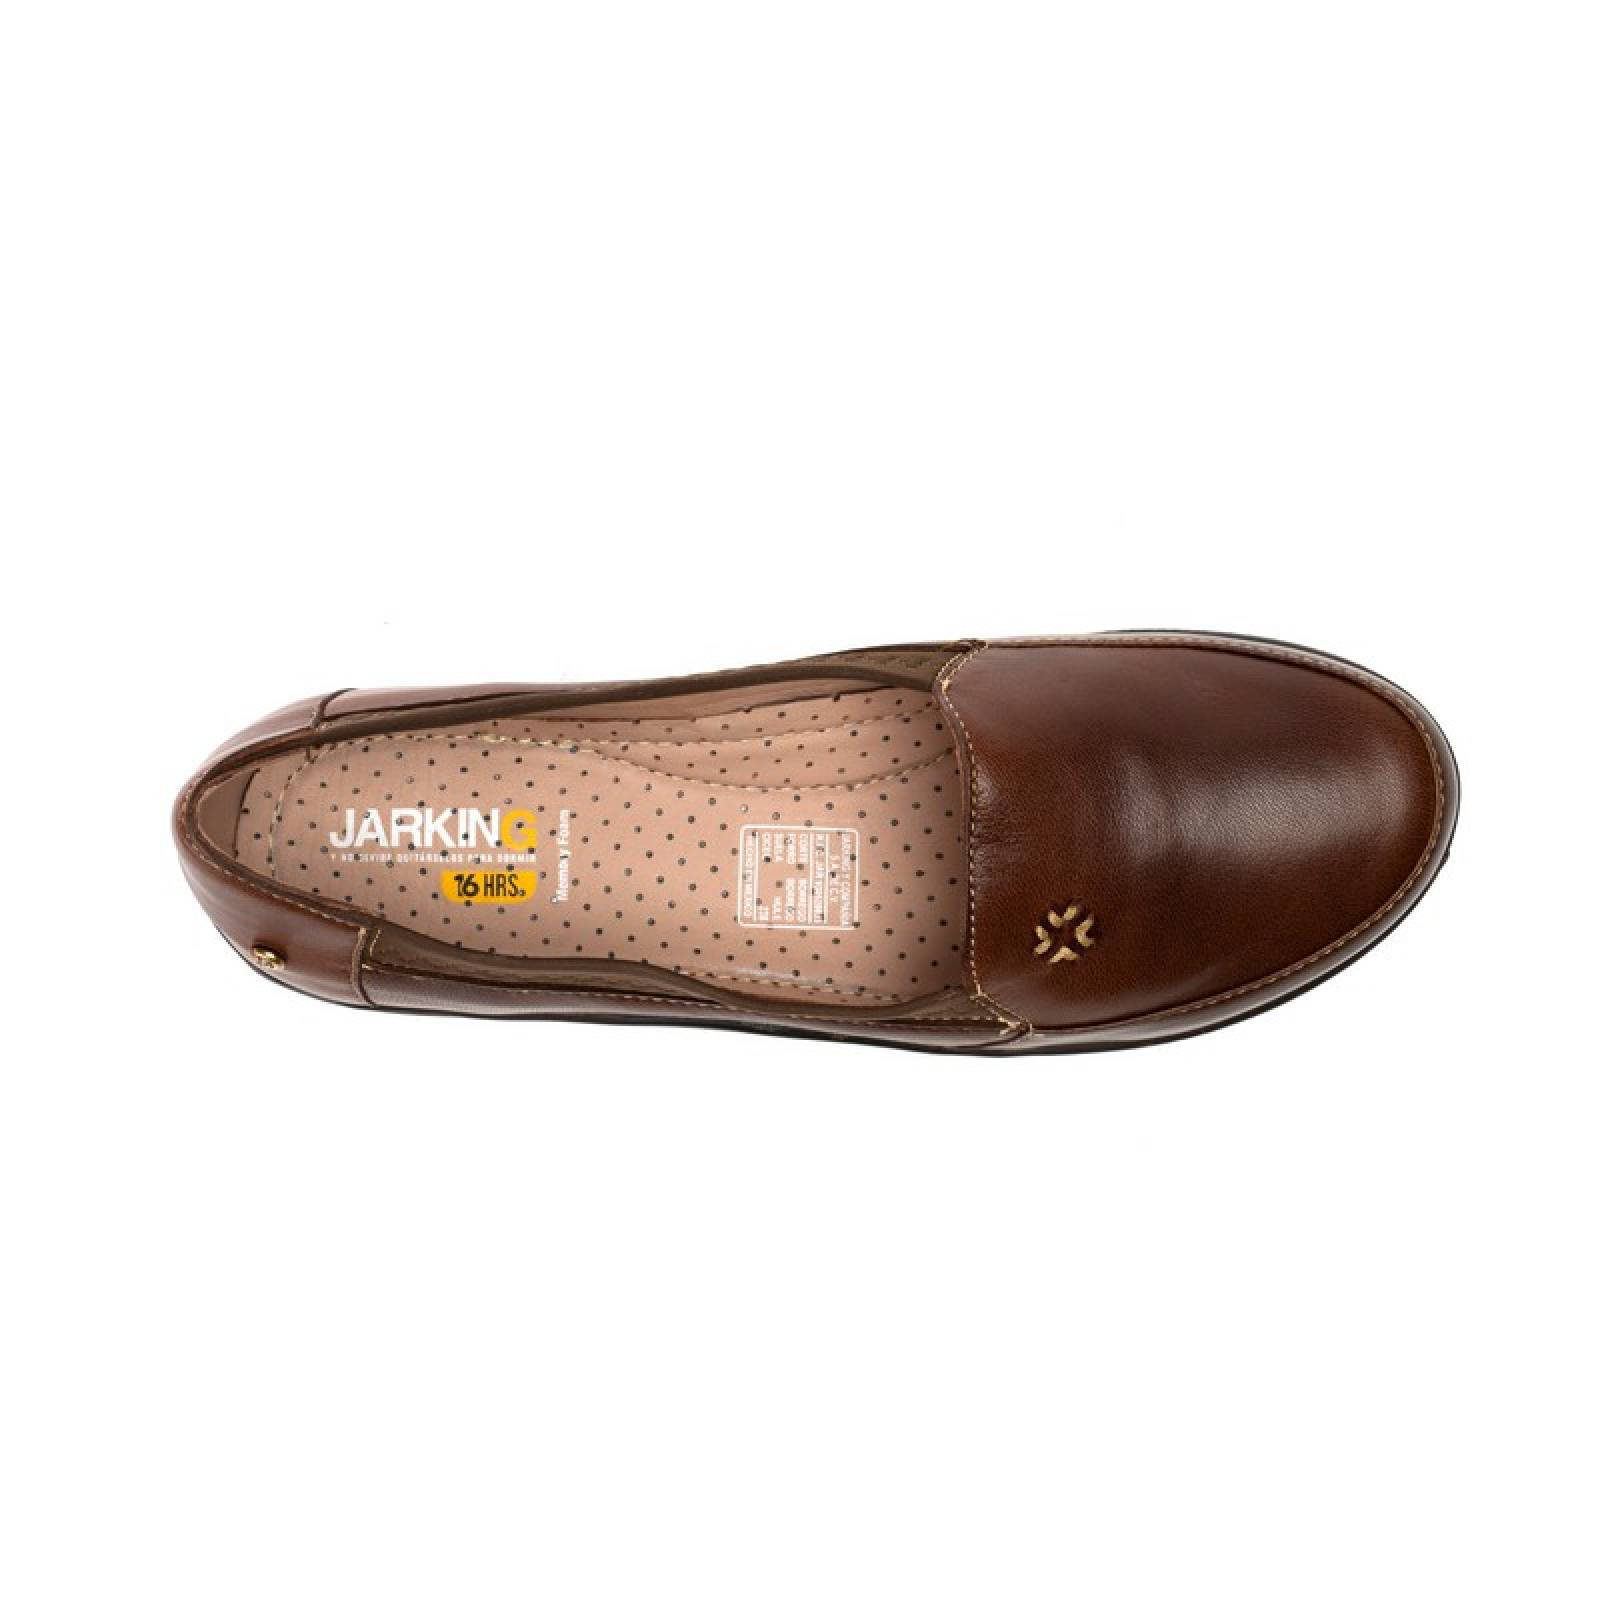 Jarking - Zapato Casual Budapest con Detalle de Licra y Bordado a Mano para Dama